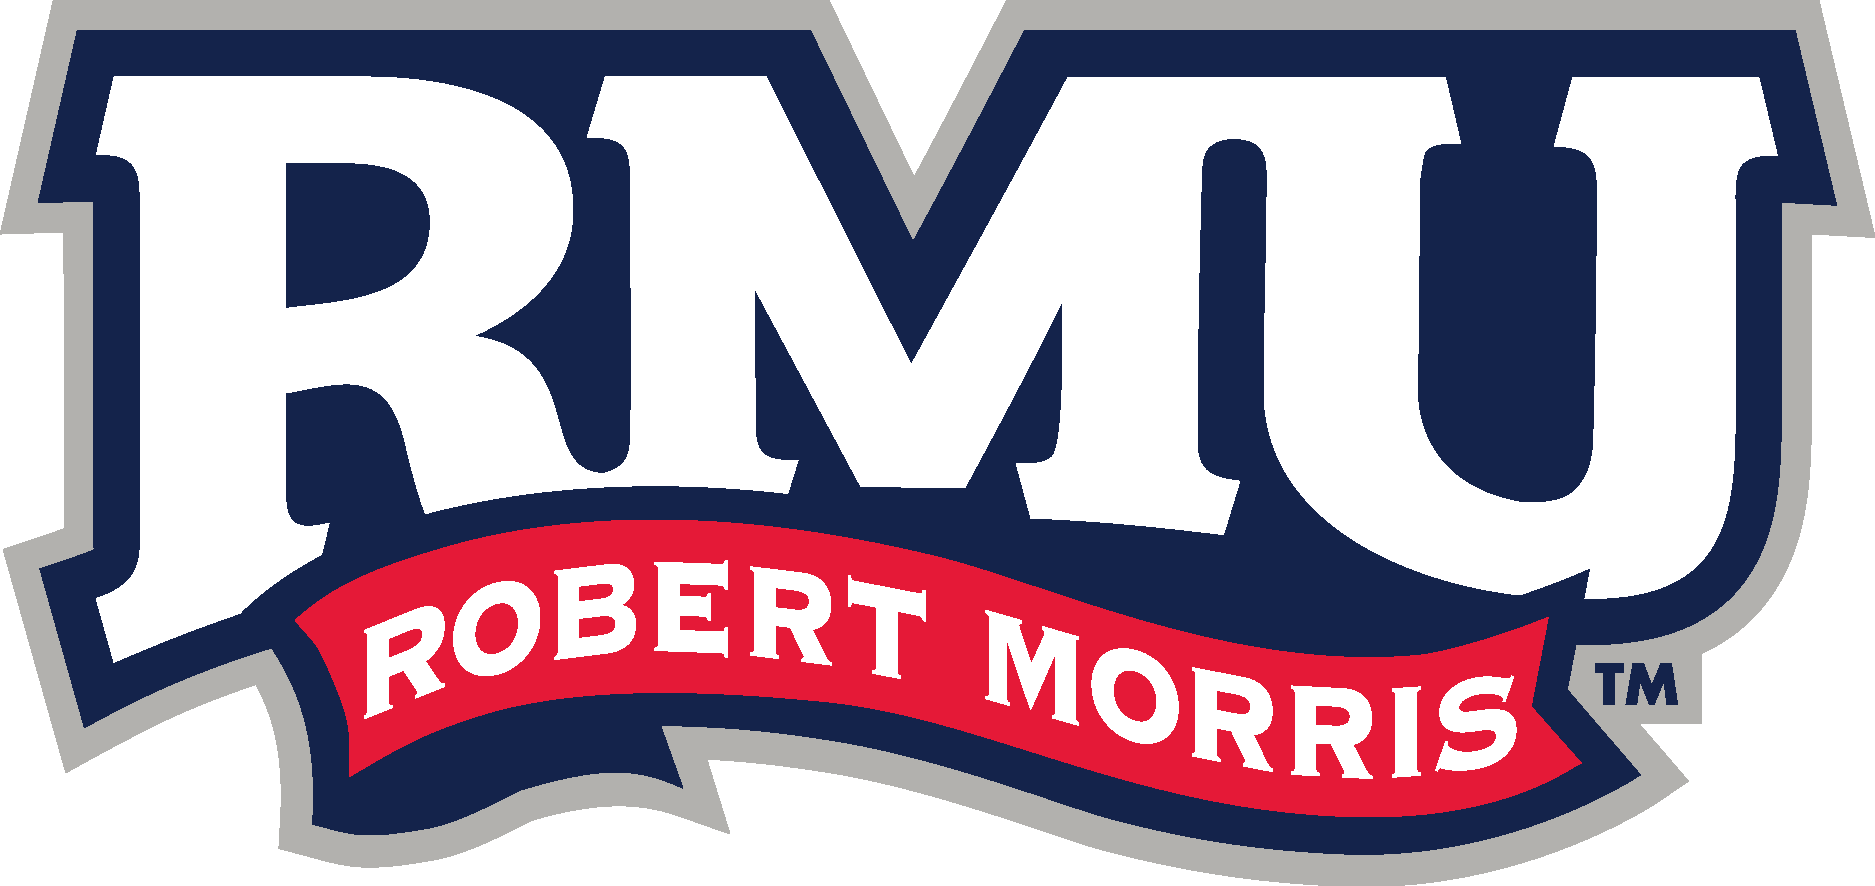 Robert Morris Colonials Logo Vector